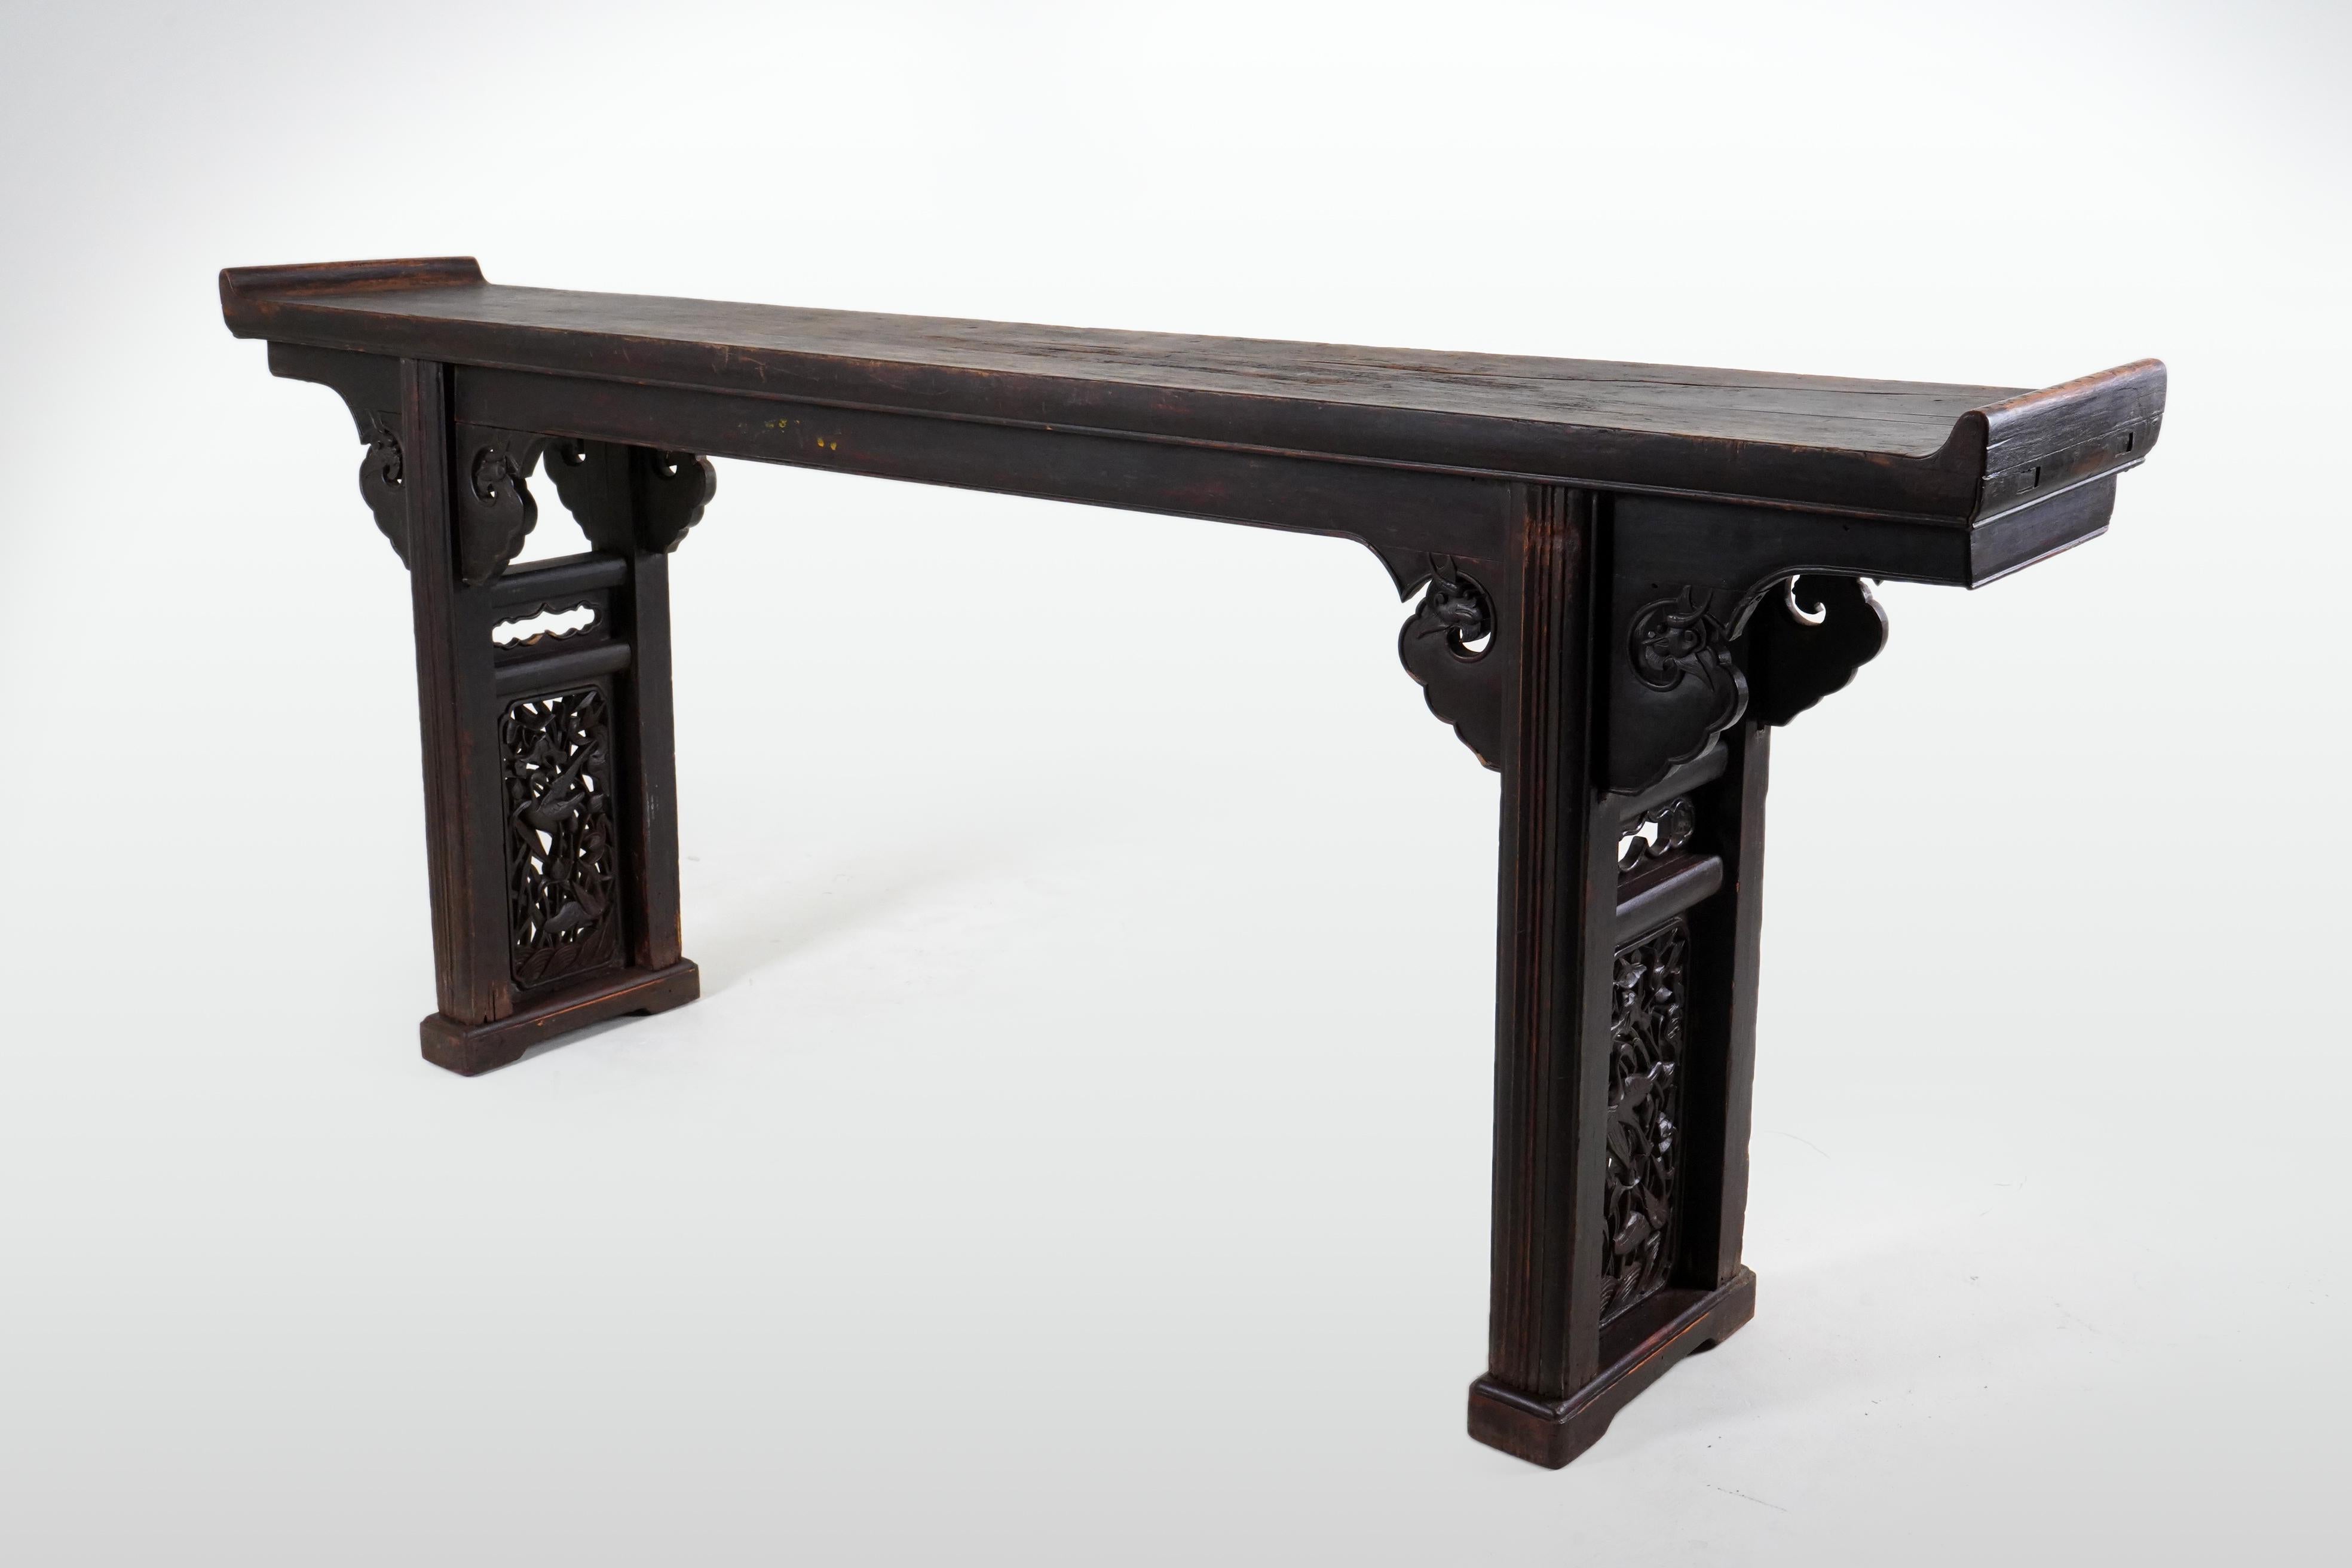 Dieser lange und anmutige chinesische Altartisch weist eine ochsenblutfarbene Patina auf, die mit dem Alter nachgedunkelt ist. Oxblood ist einer der drei traditionellen chinesischen Lacke, neben Rot und Schwarz, die beide völlig undurchsichtig sind.